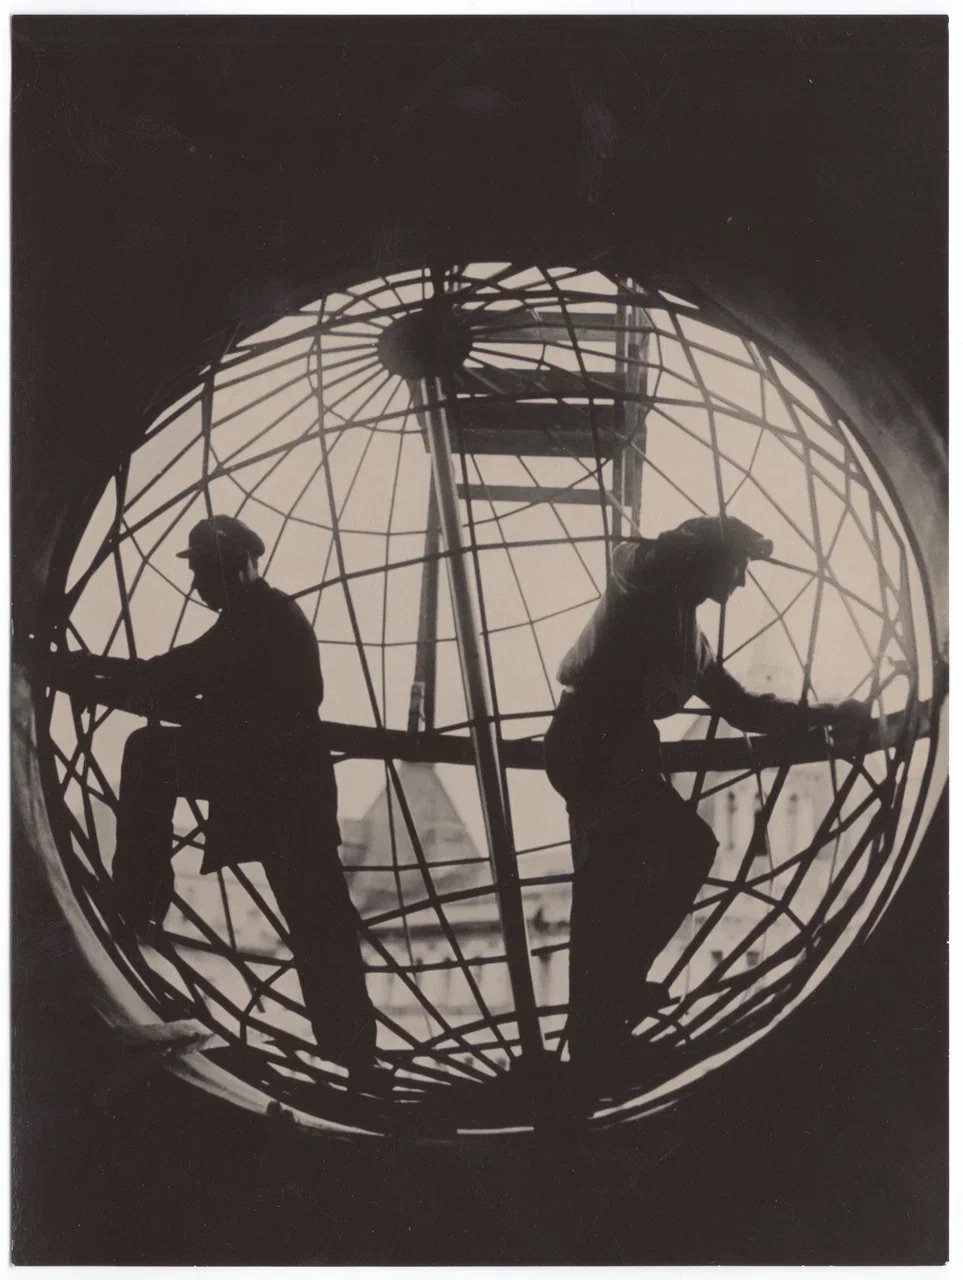 Центр визуальной культуры Béton представил выставку «Алфавит. Советская фотография 1920-1930-х годов» (фото 8)